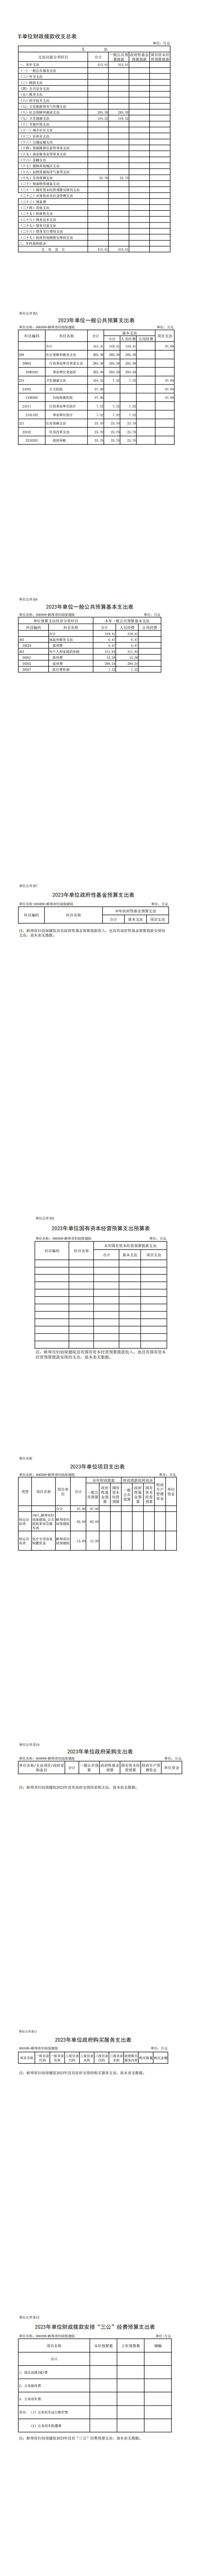 蚌埠市妇幼保健院2023年预算公开_00(1).jpg